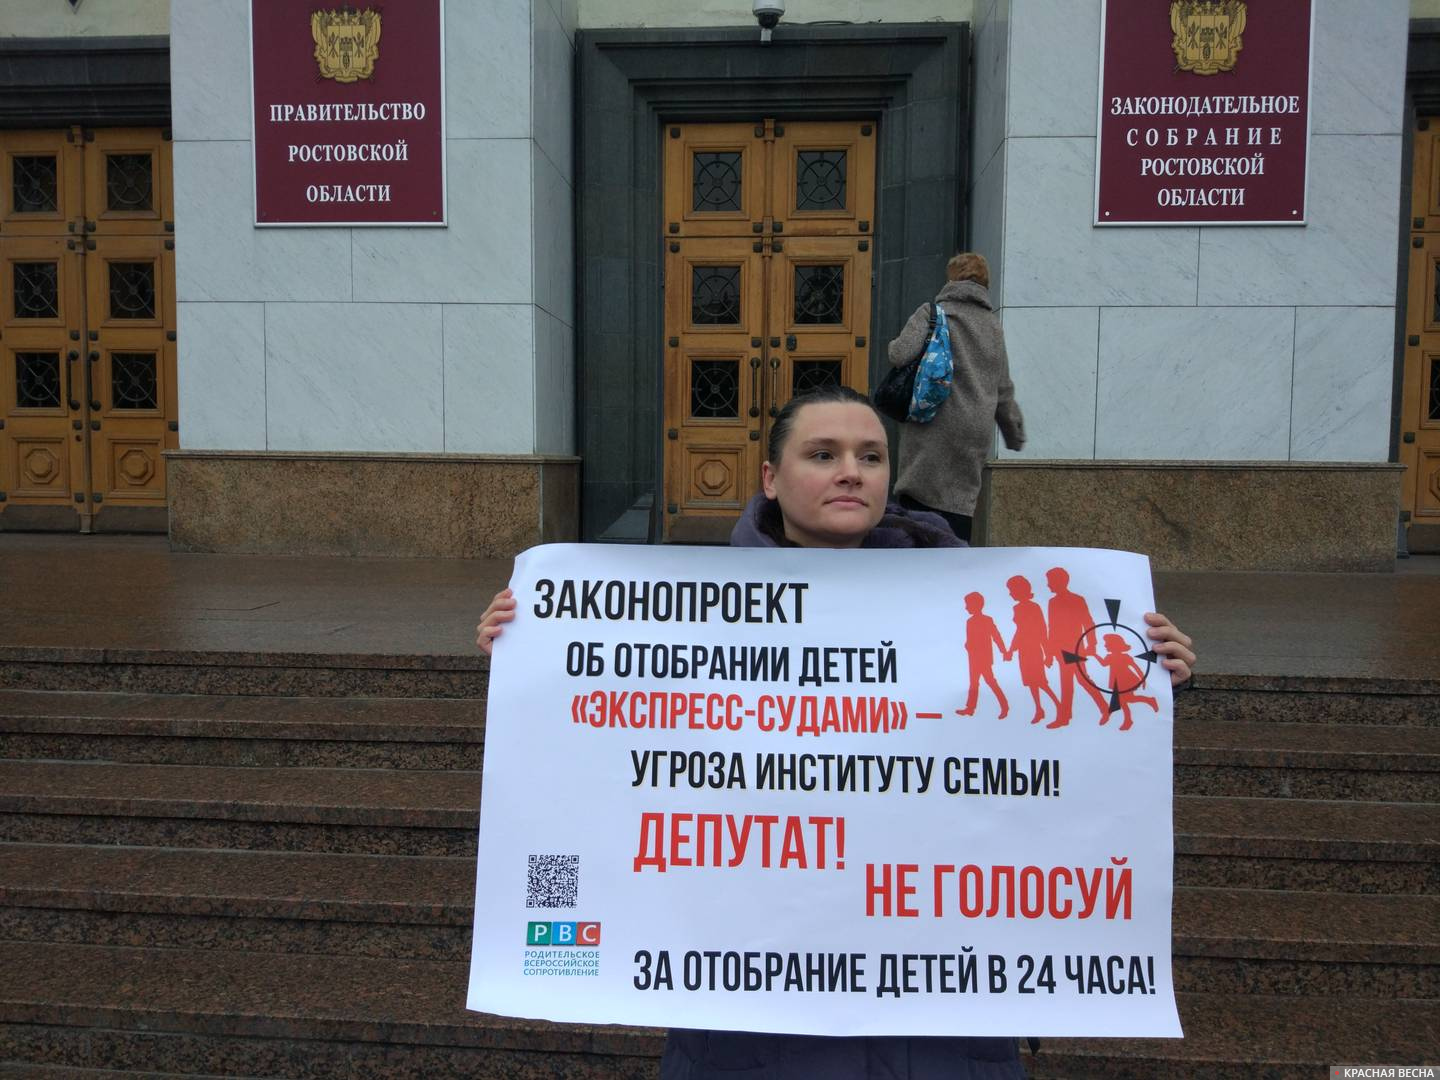 Одиночный пикет против законопроекта Клишаса-Крашенинникова в Ростове-на-Дону